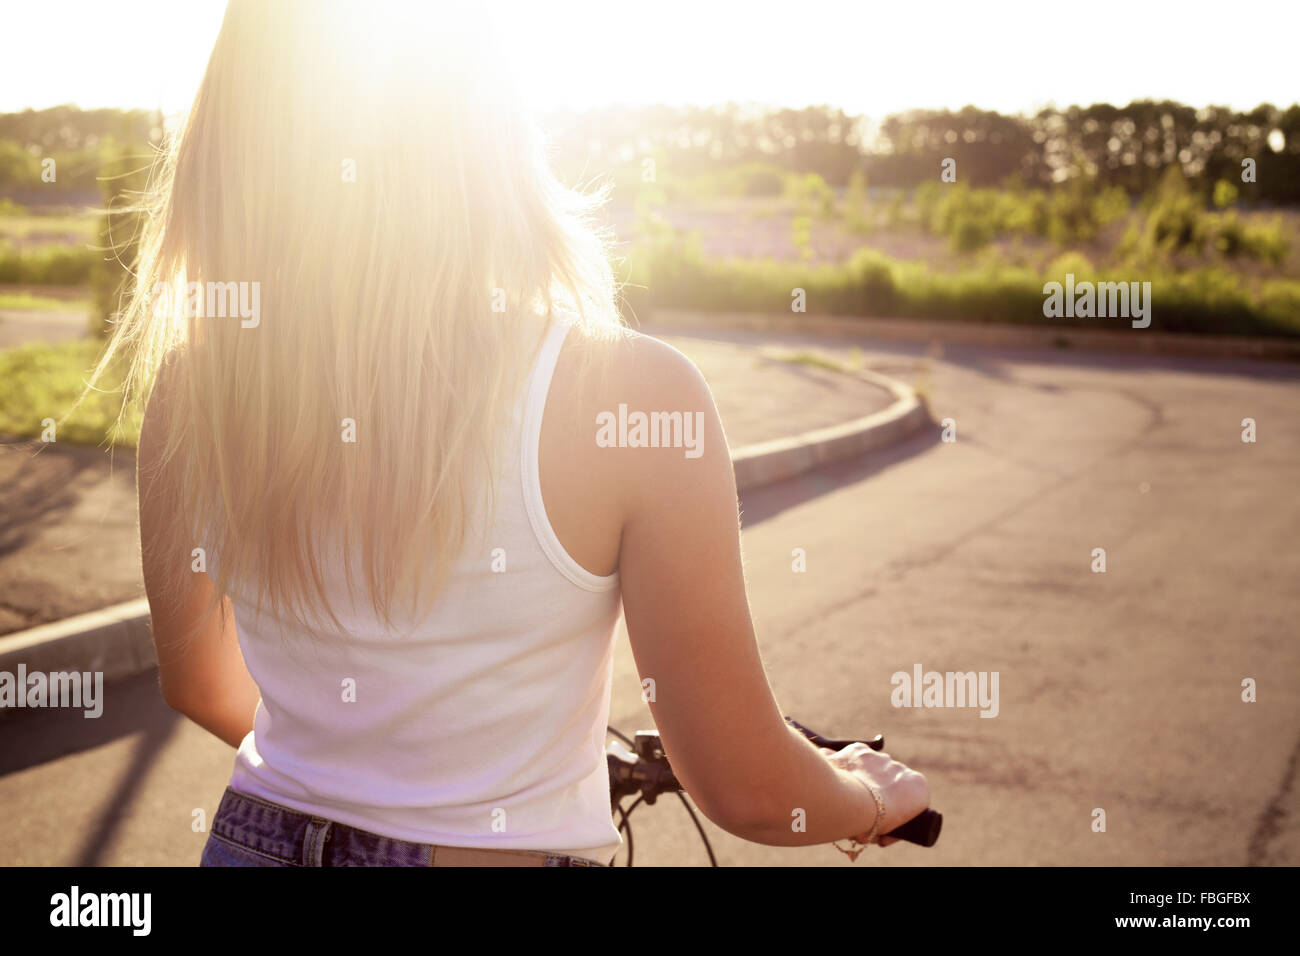 Bella ragazza adolescente riding bike indossa casual serbatoio bianco top e jeans corti sul parco sulla strada illuminata dal sole giornata estiva, indietro Foto Stock